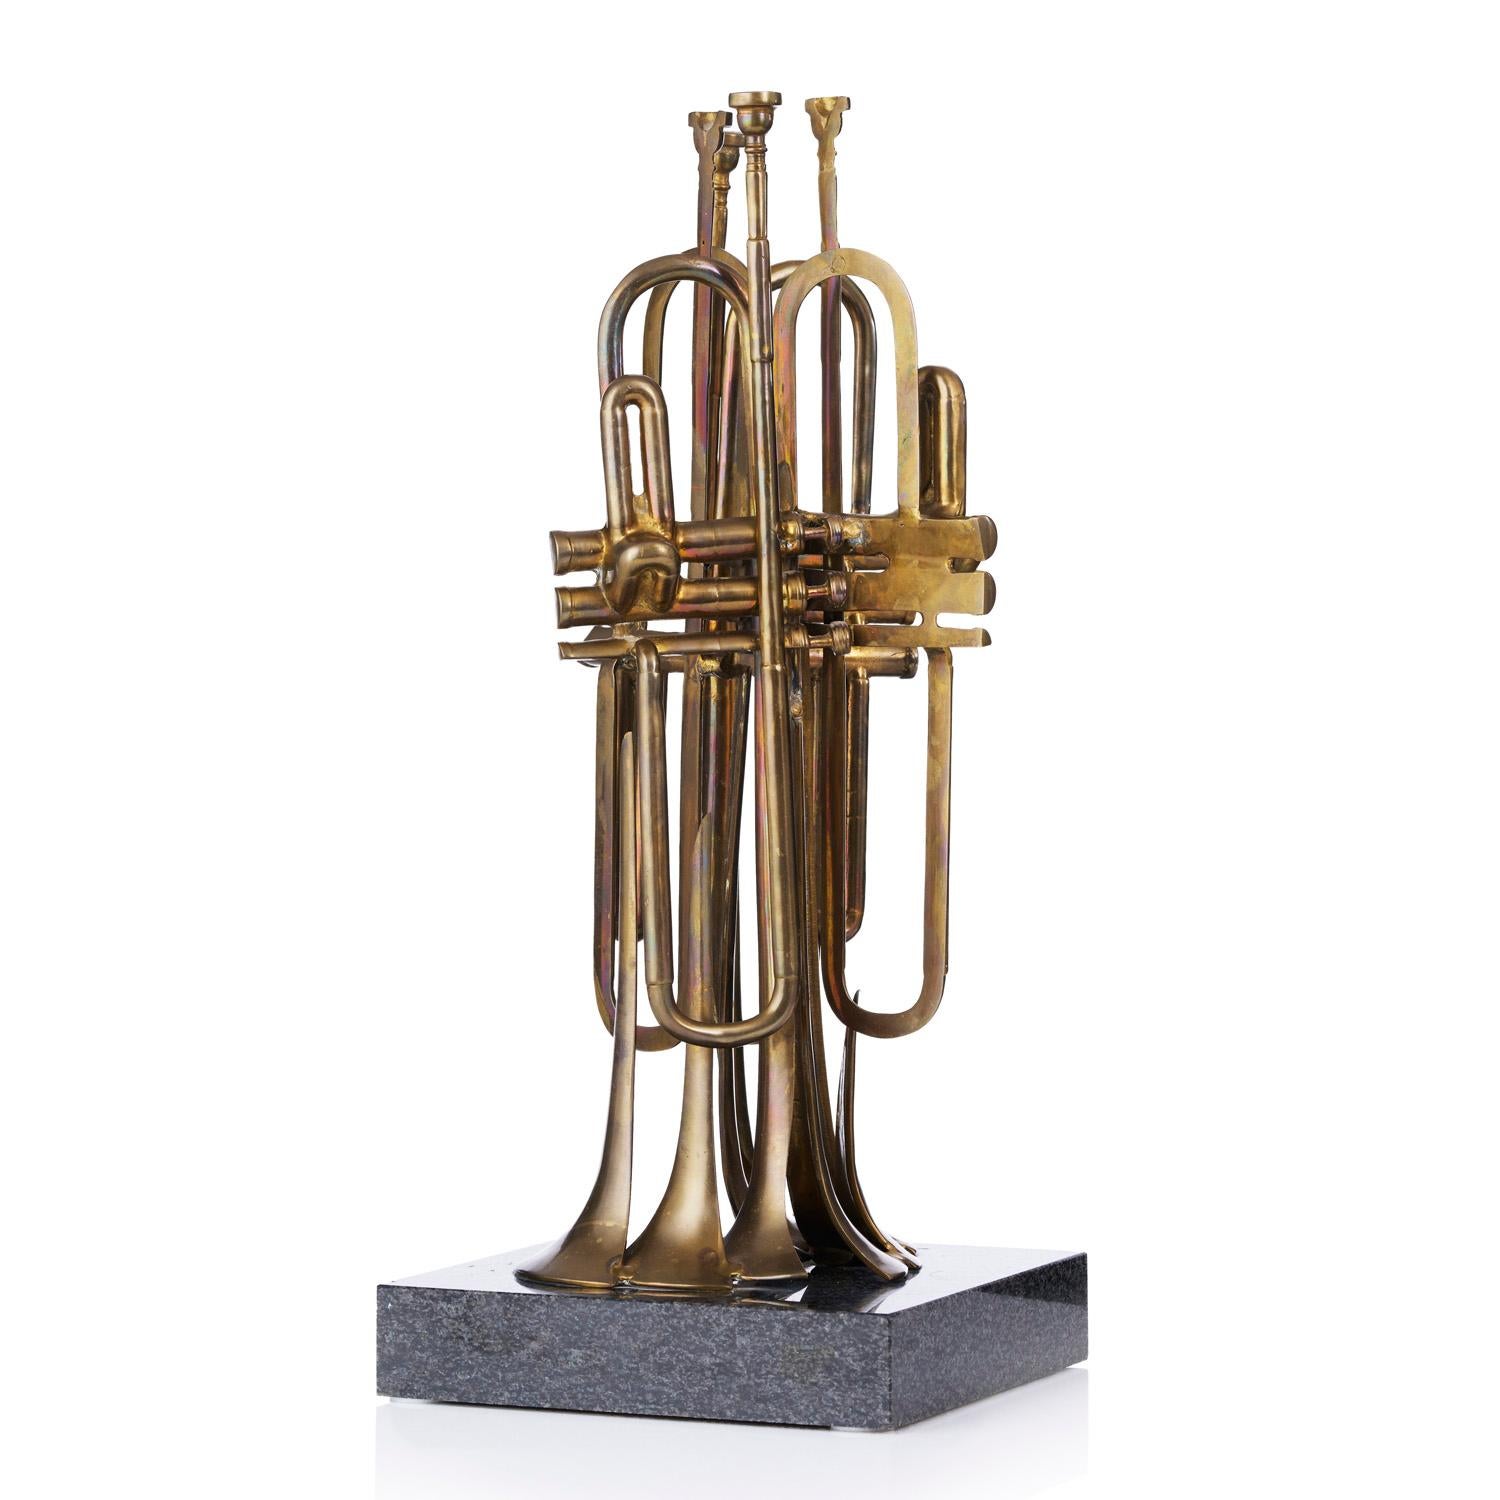 La trompette coupée – Sculpture von Fernandez Arman